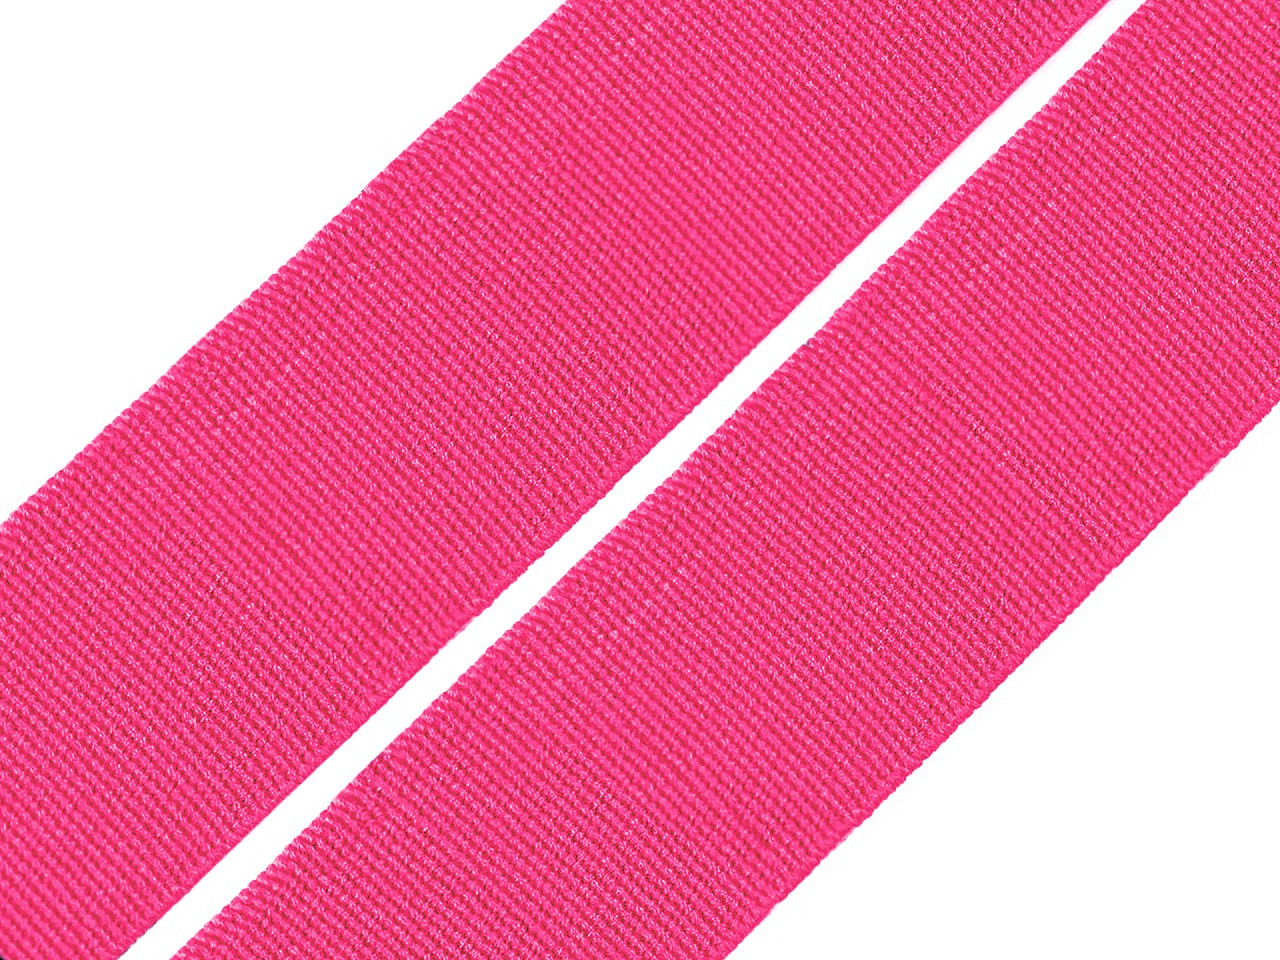 Pruženka hladká šíře 20 mm tkaná barevná, barva 1434 růžová malinová